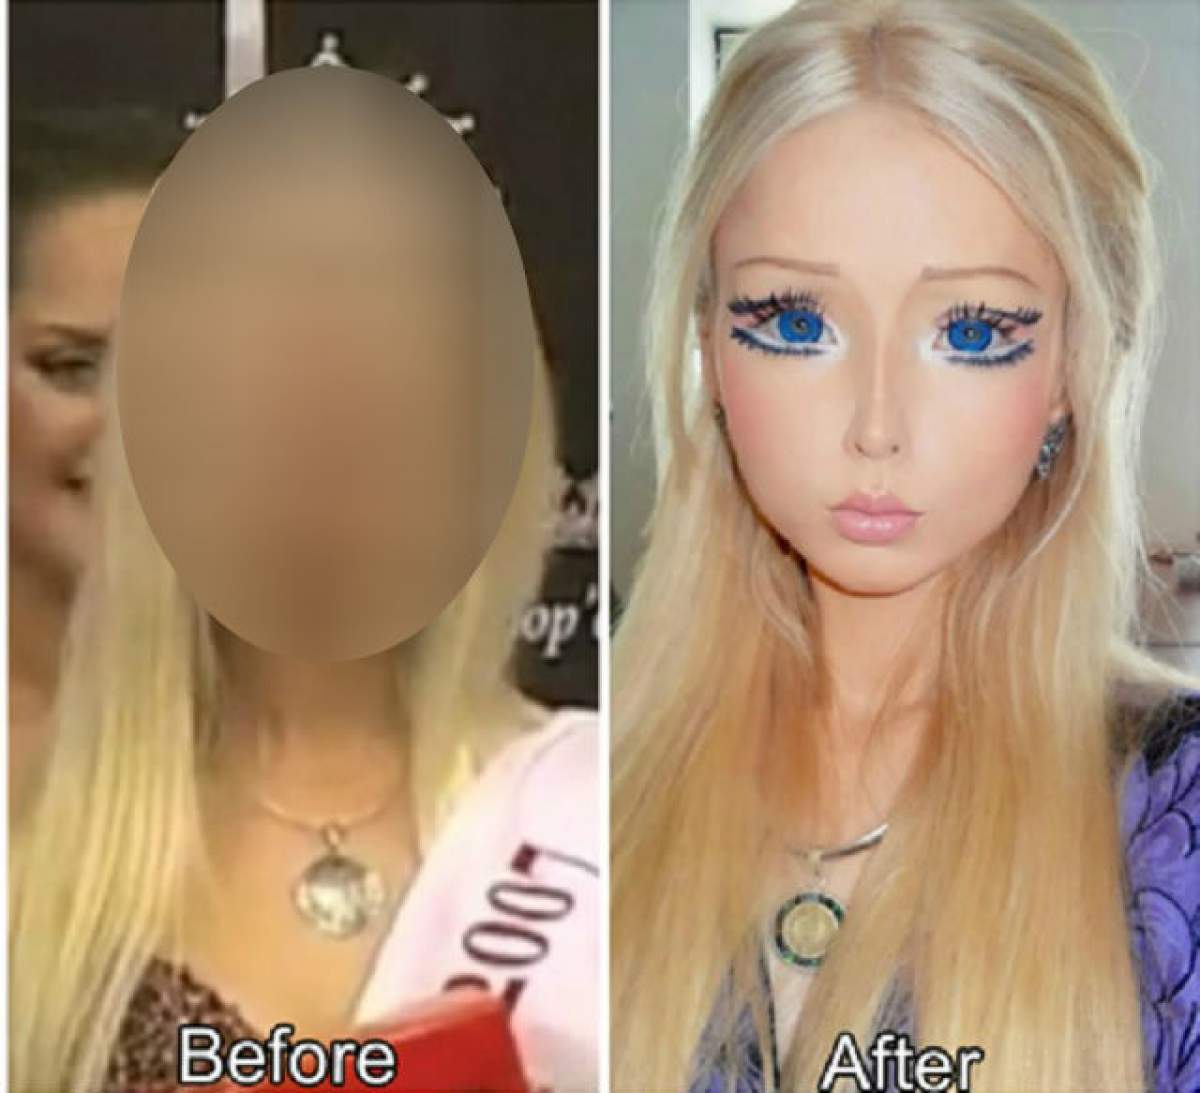 Poza asta te va şoca! Uite cum arăta femeia Barbie înainte să-şi facă intervenţiile chirurgicale!